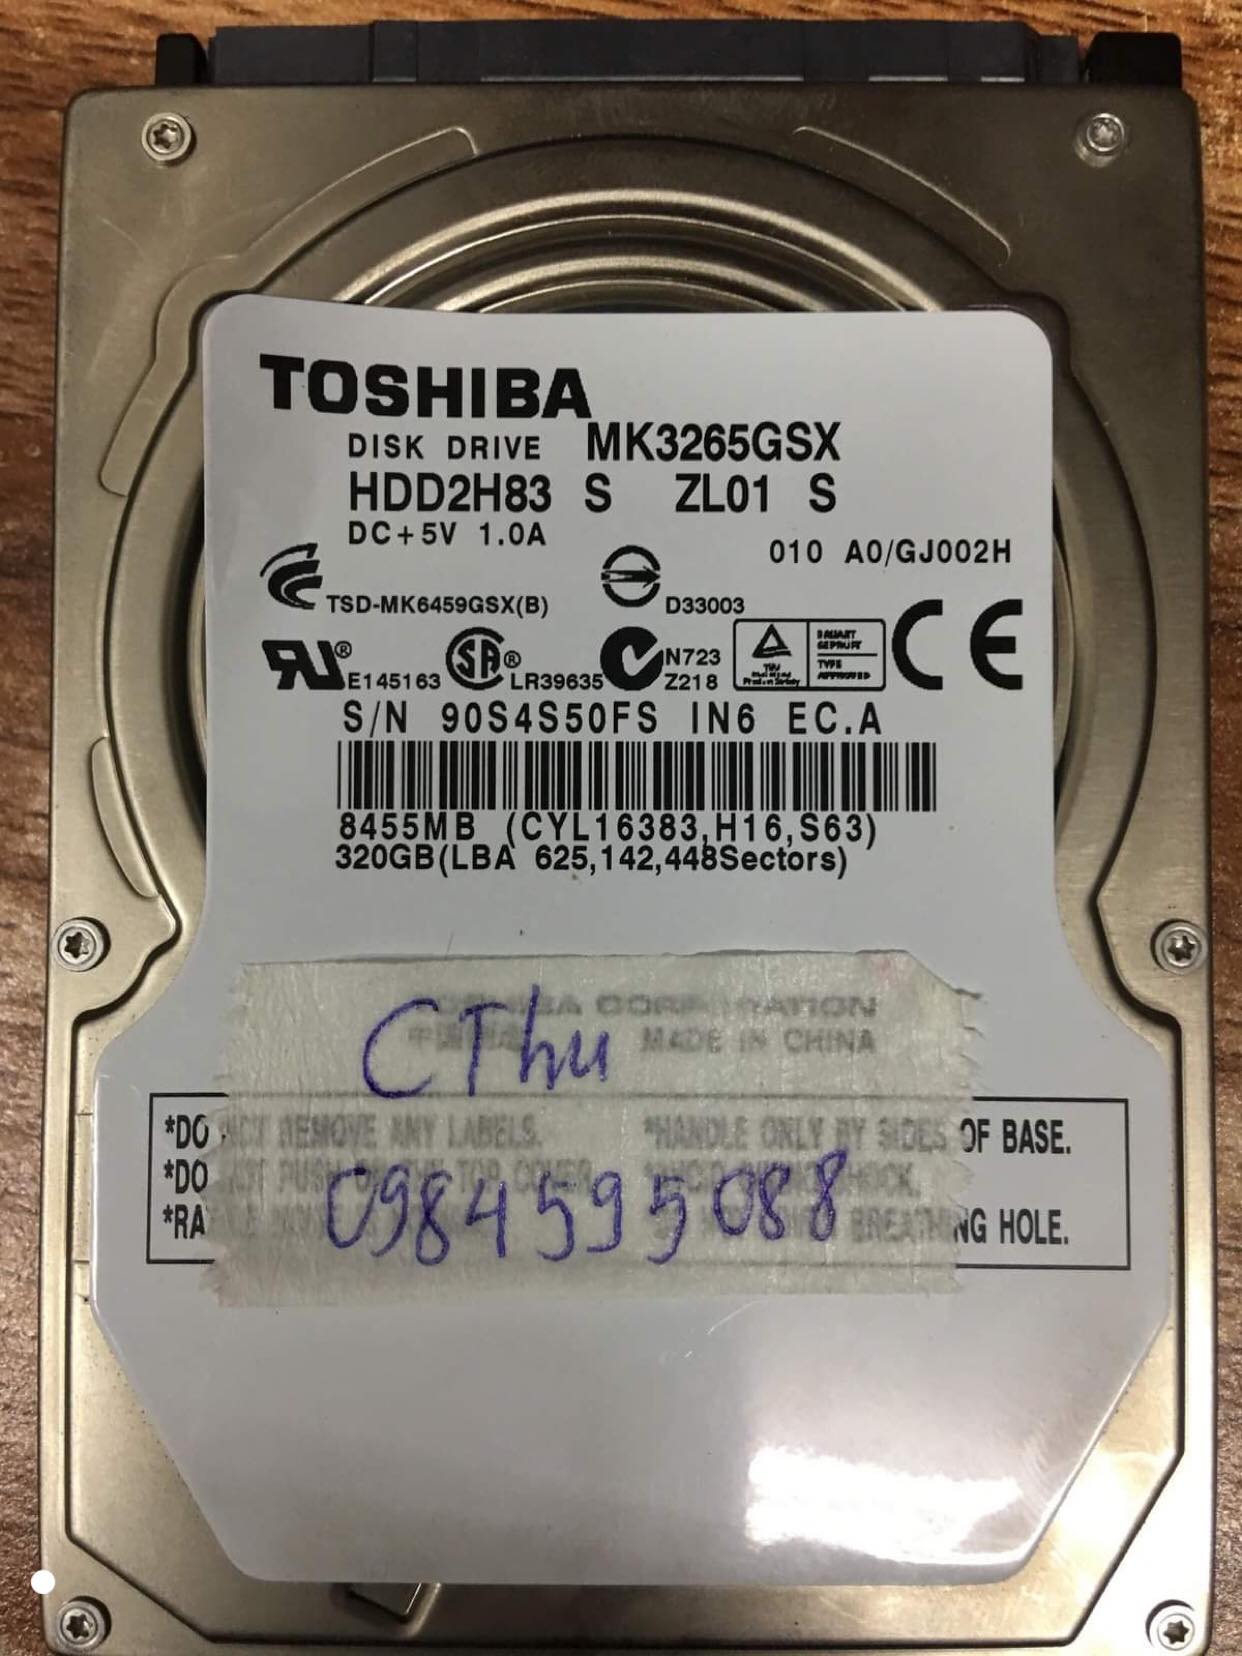 Phục hồi dữ liệu ổ cứng Toshiba 500GB lỗi đầu đọc 22/07/2019 - cuumaytinh